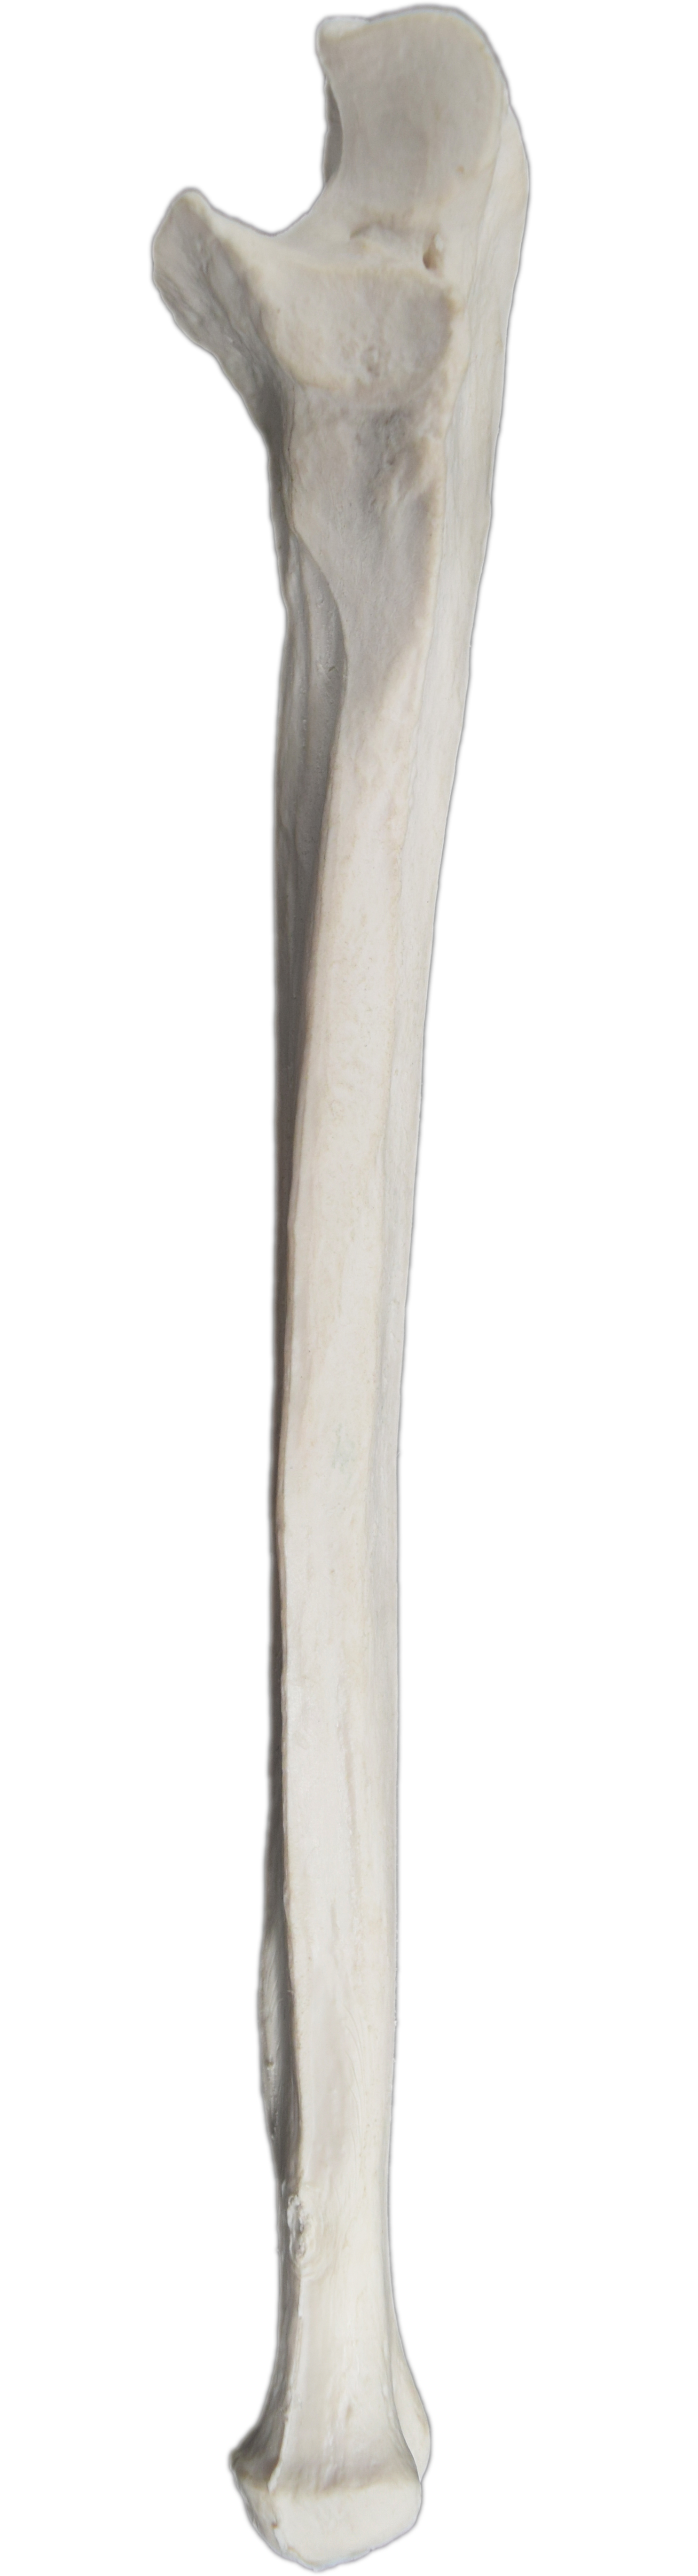 Ulna Bone - L - Anatomically Accurate, Detailed Human Bone Replica